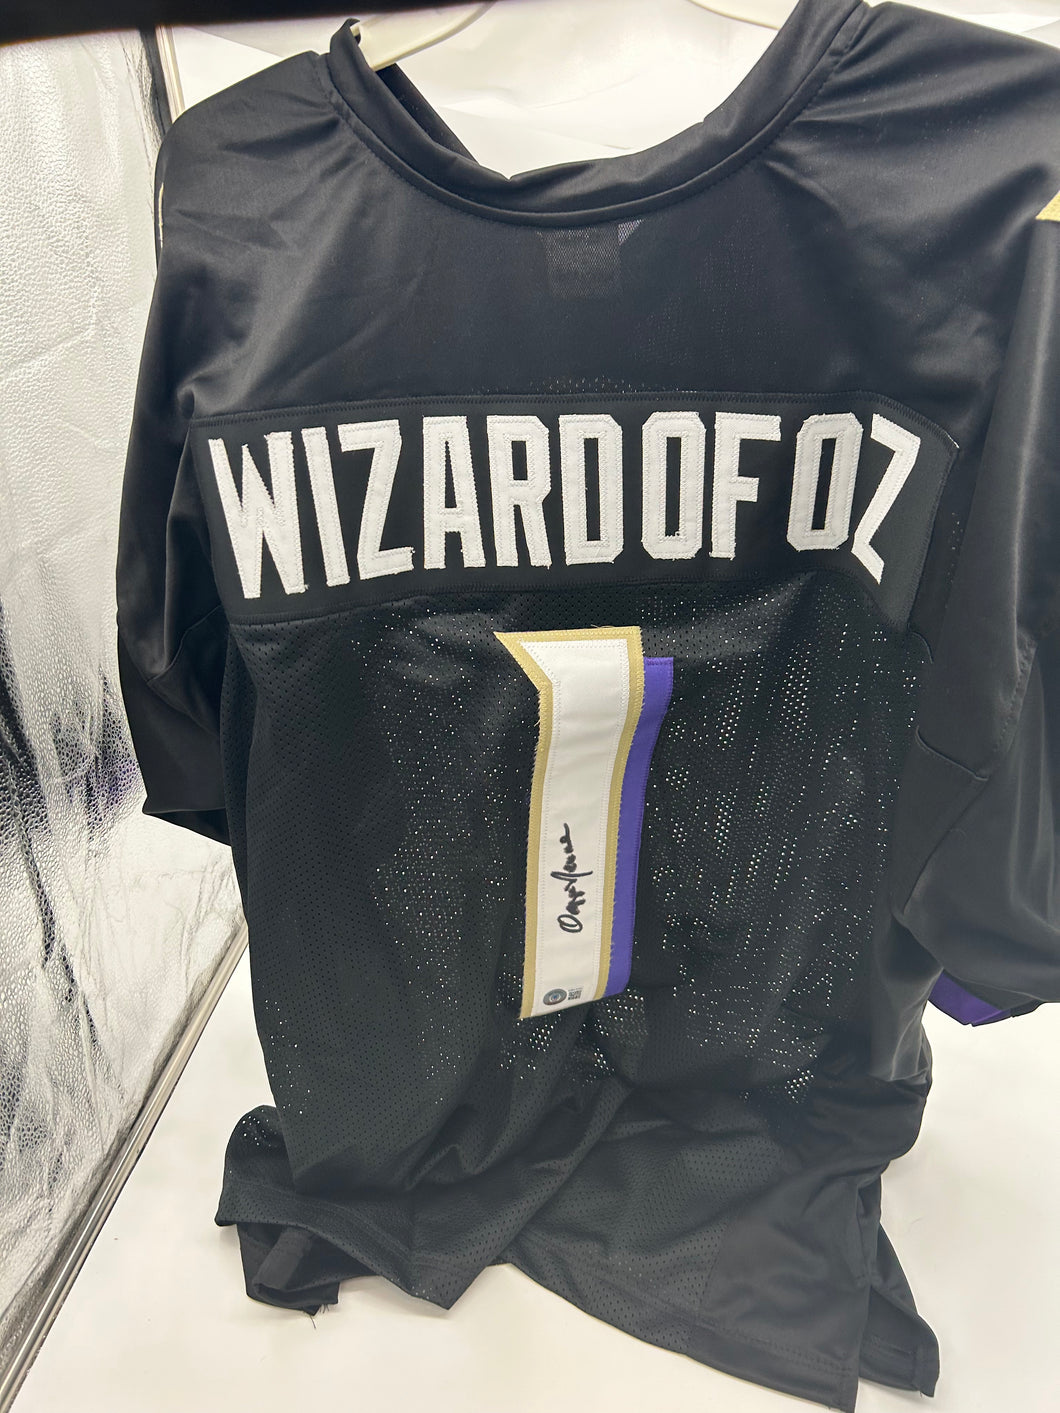 Ozzie Newsome Wizard of Oz signed jersey